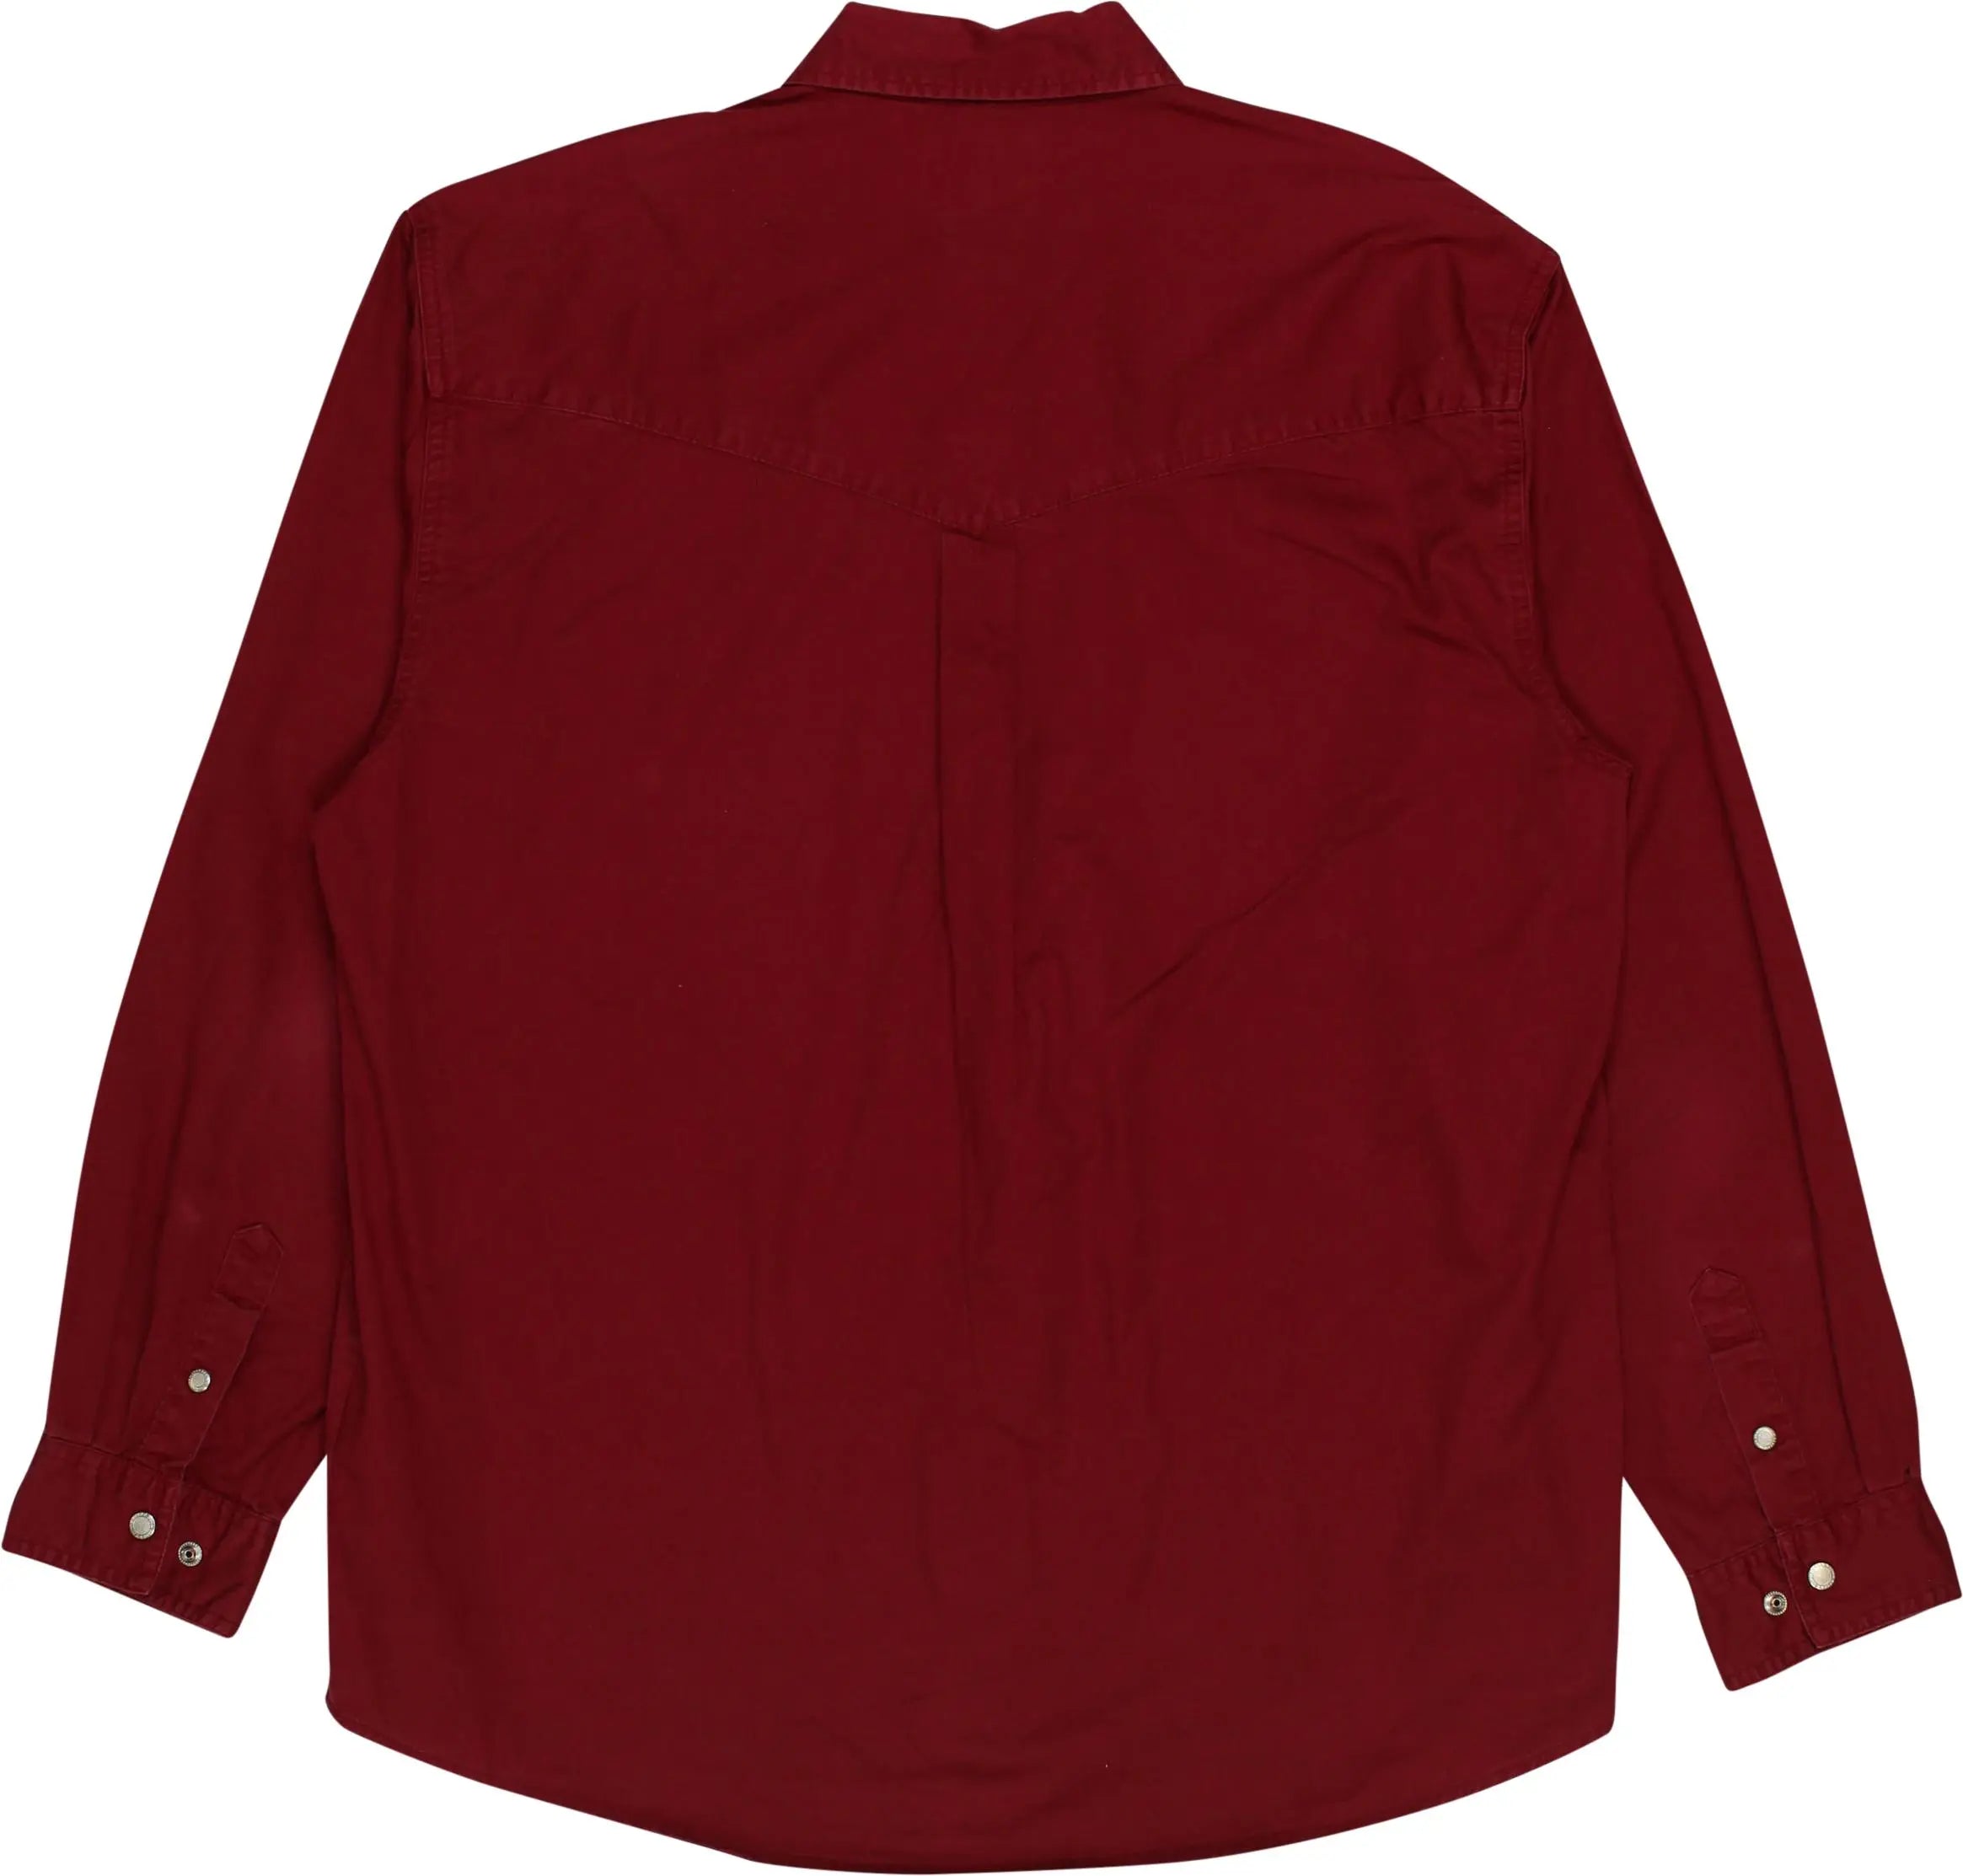 John Baner - Red Denim Shirt- ThriftTale.com - Vintage and second handclothing